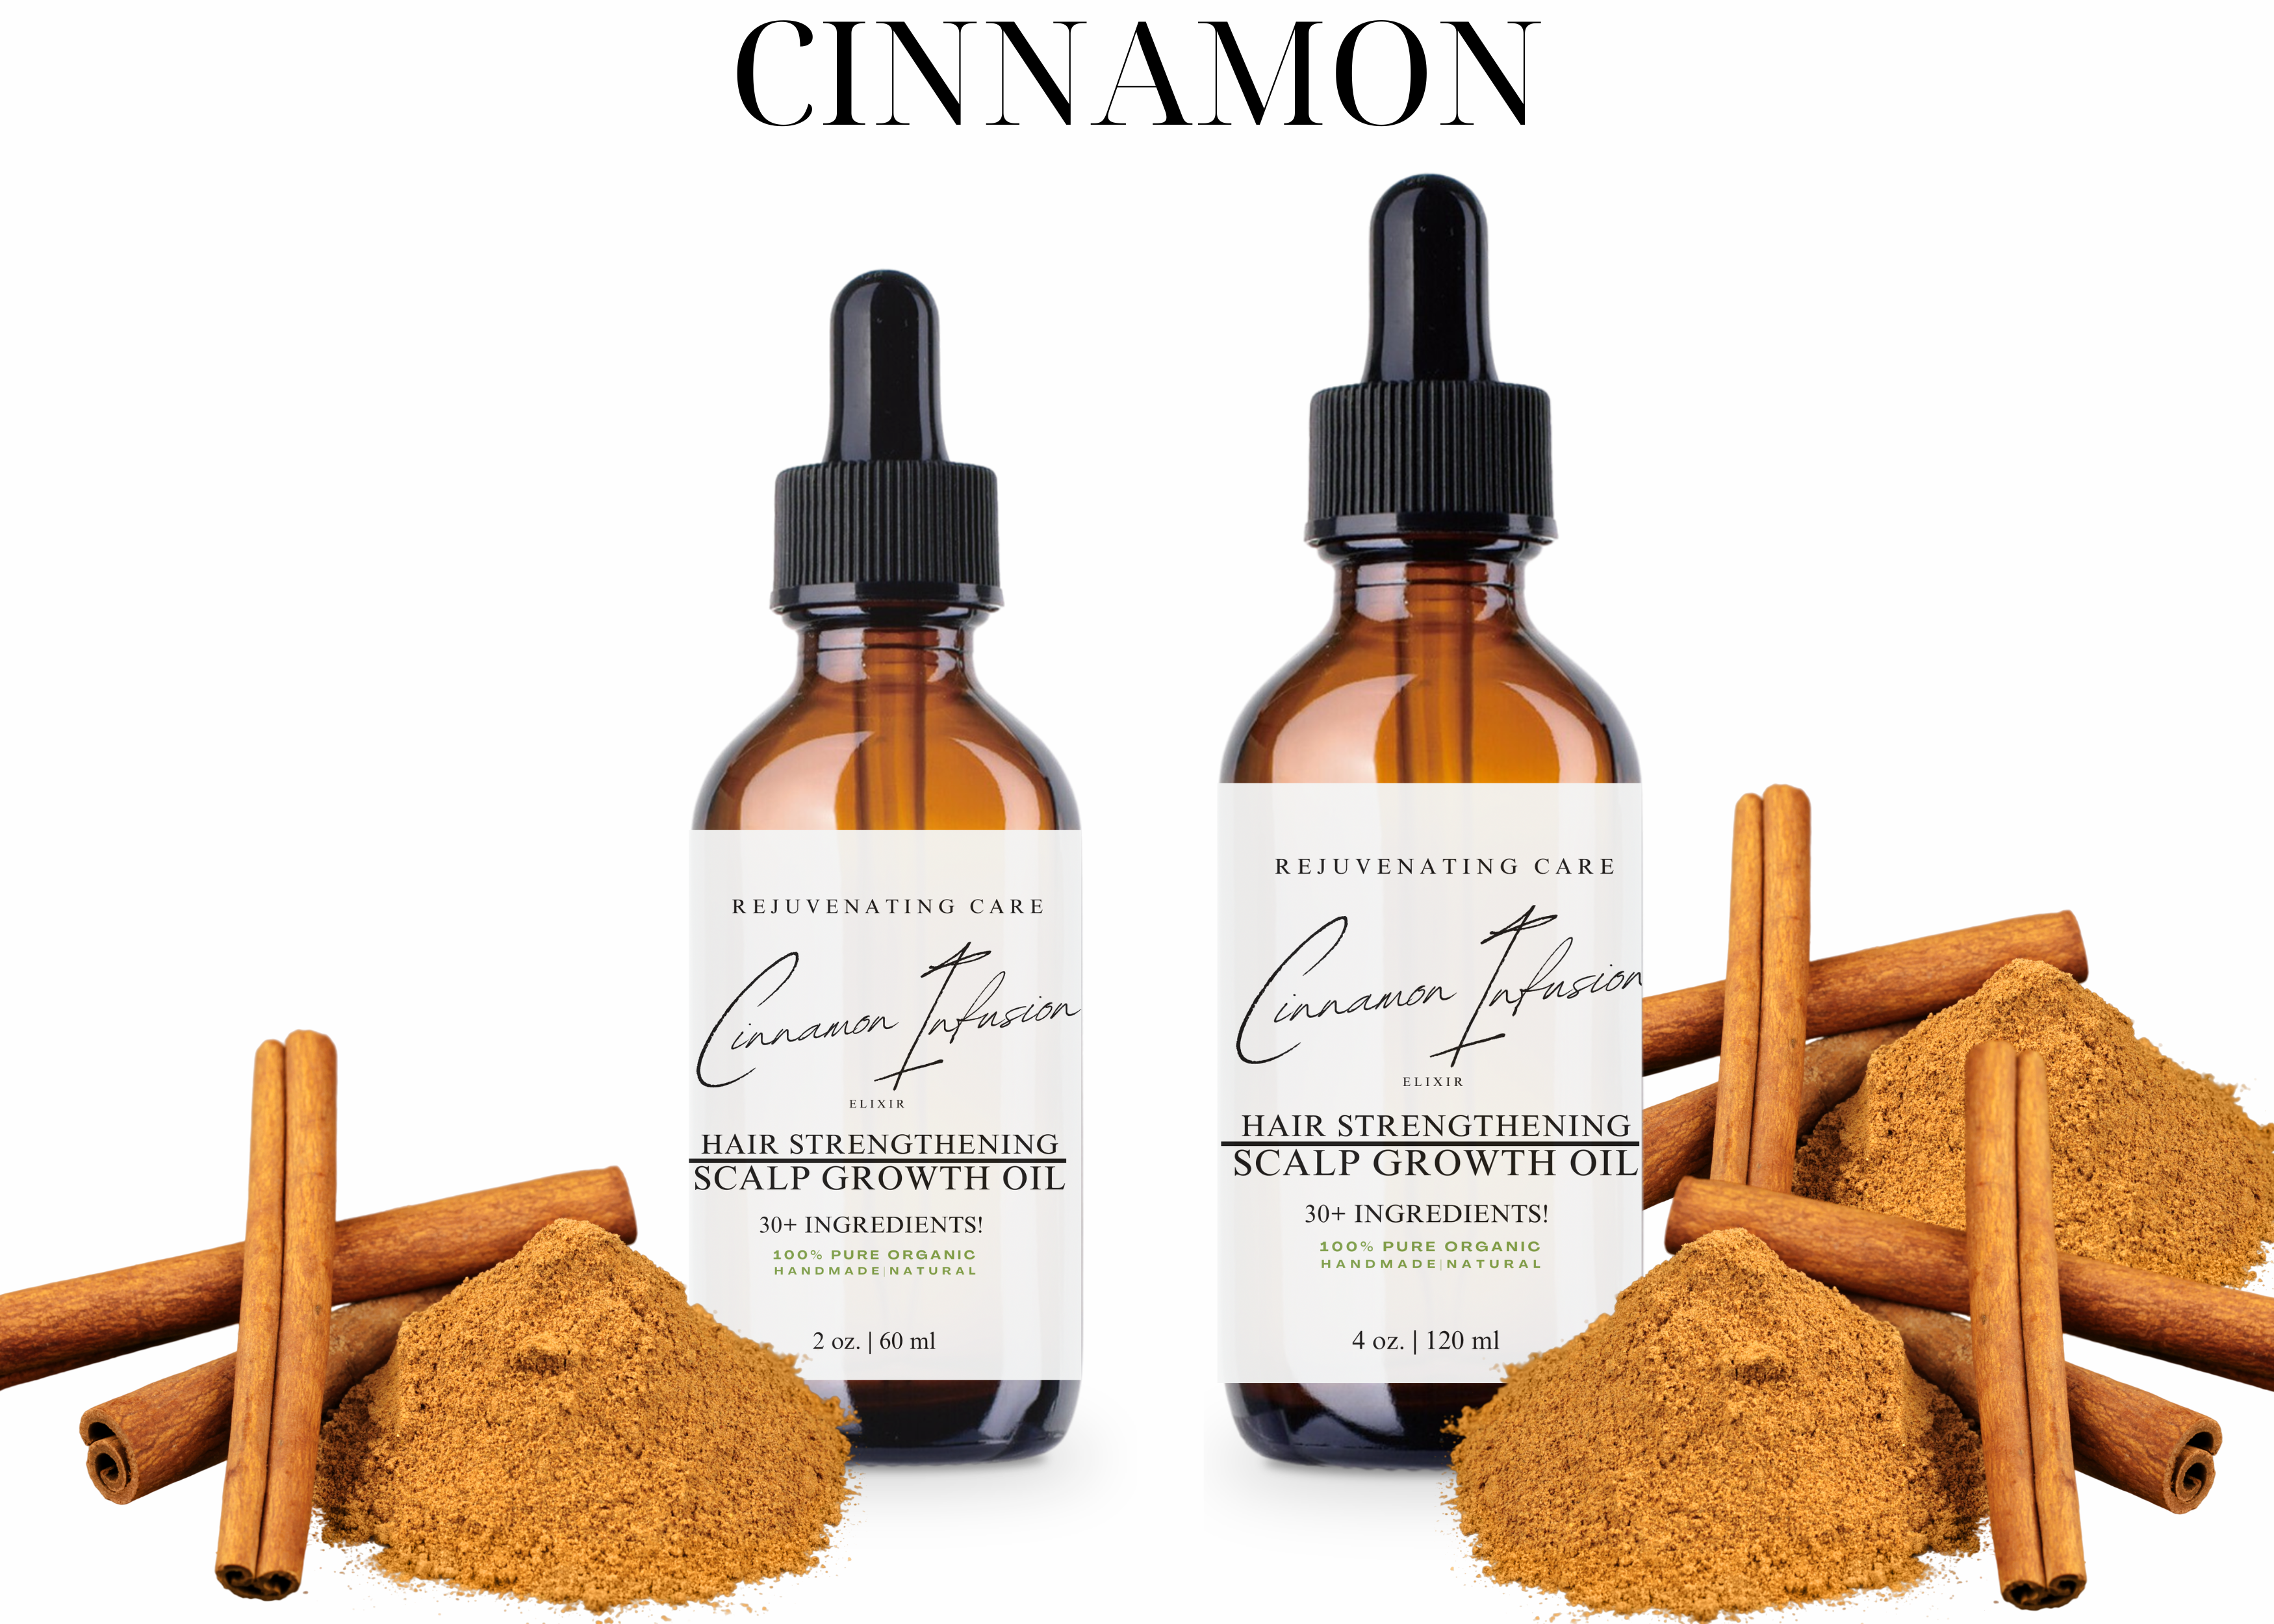 Cinnamon Hair Strengthening and Scalp Growth Oil 2oz